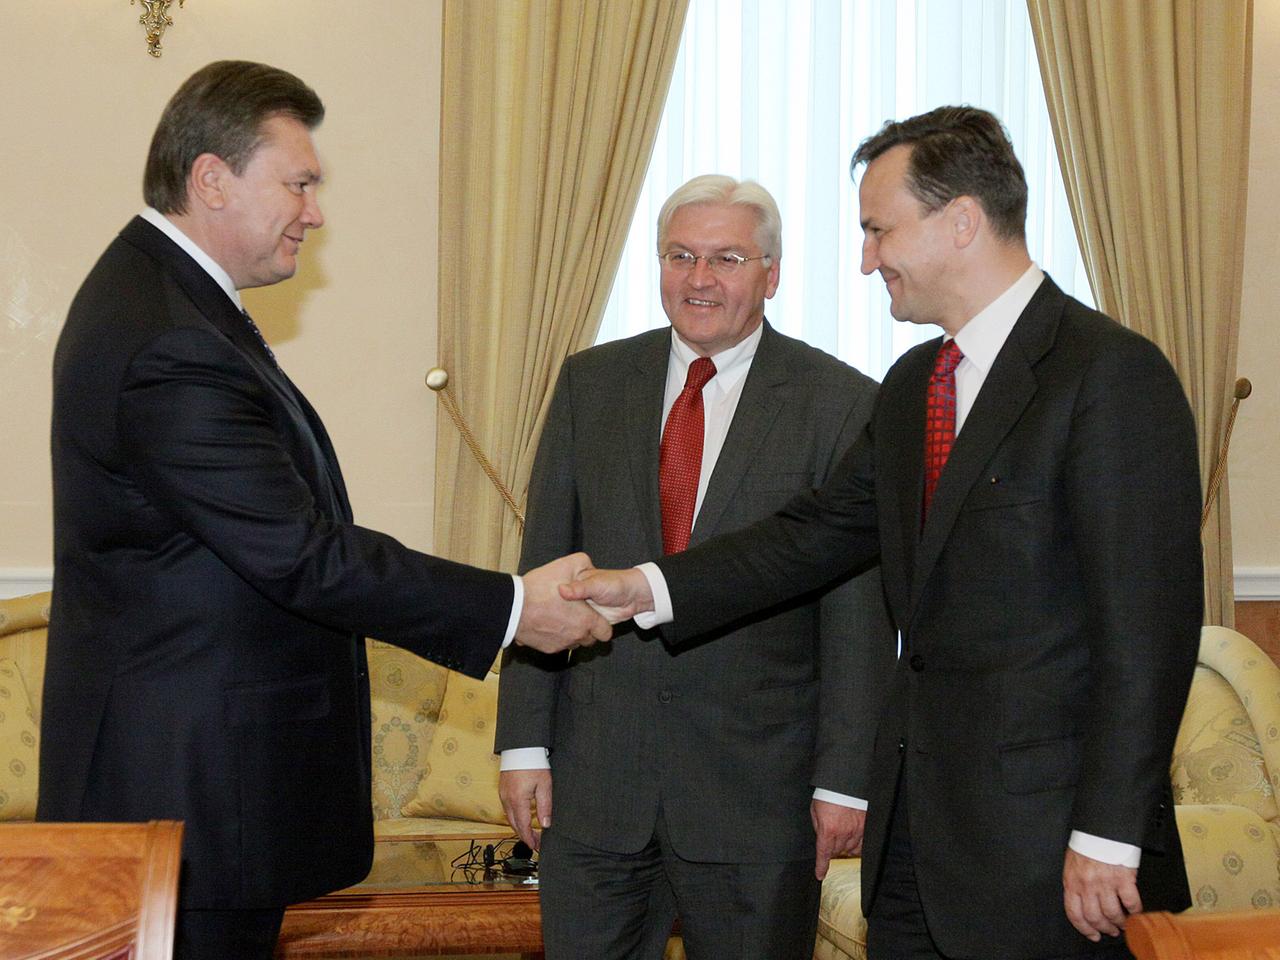 Der ukrainische Präsident Viktor Janukowitsch schüttelt dem polnischen Außenminister Radoslav Sikorski die Hand, dahinter steht der deutsche Außenminister Frank-Walter Steinmeier.